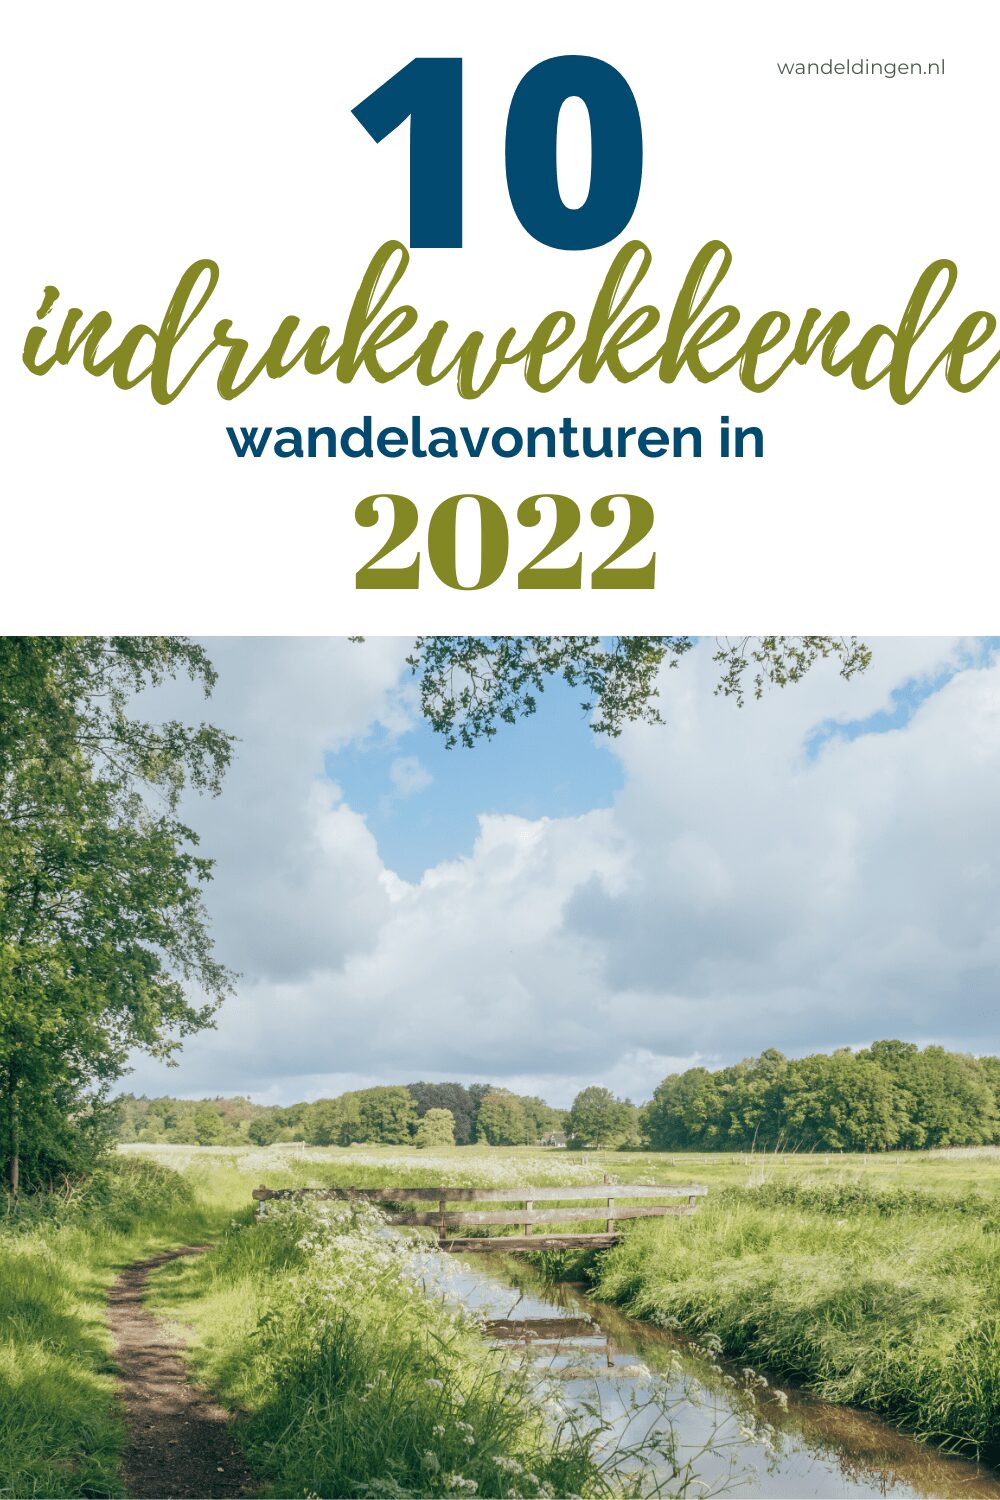 wandelavonturen 2022